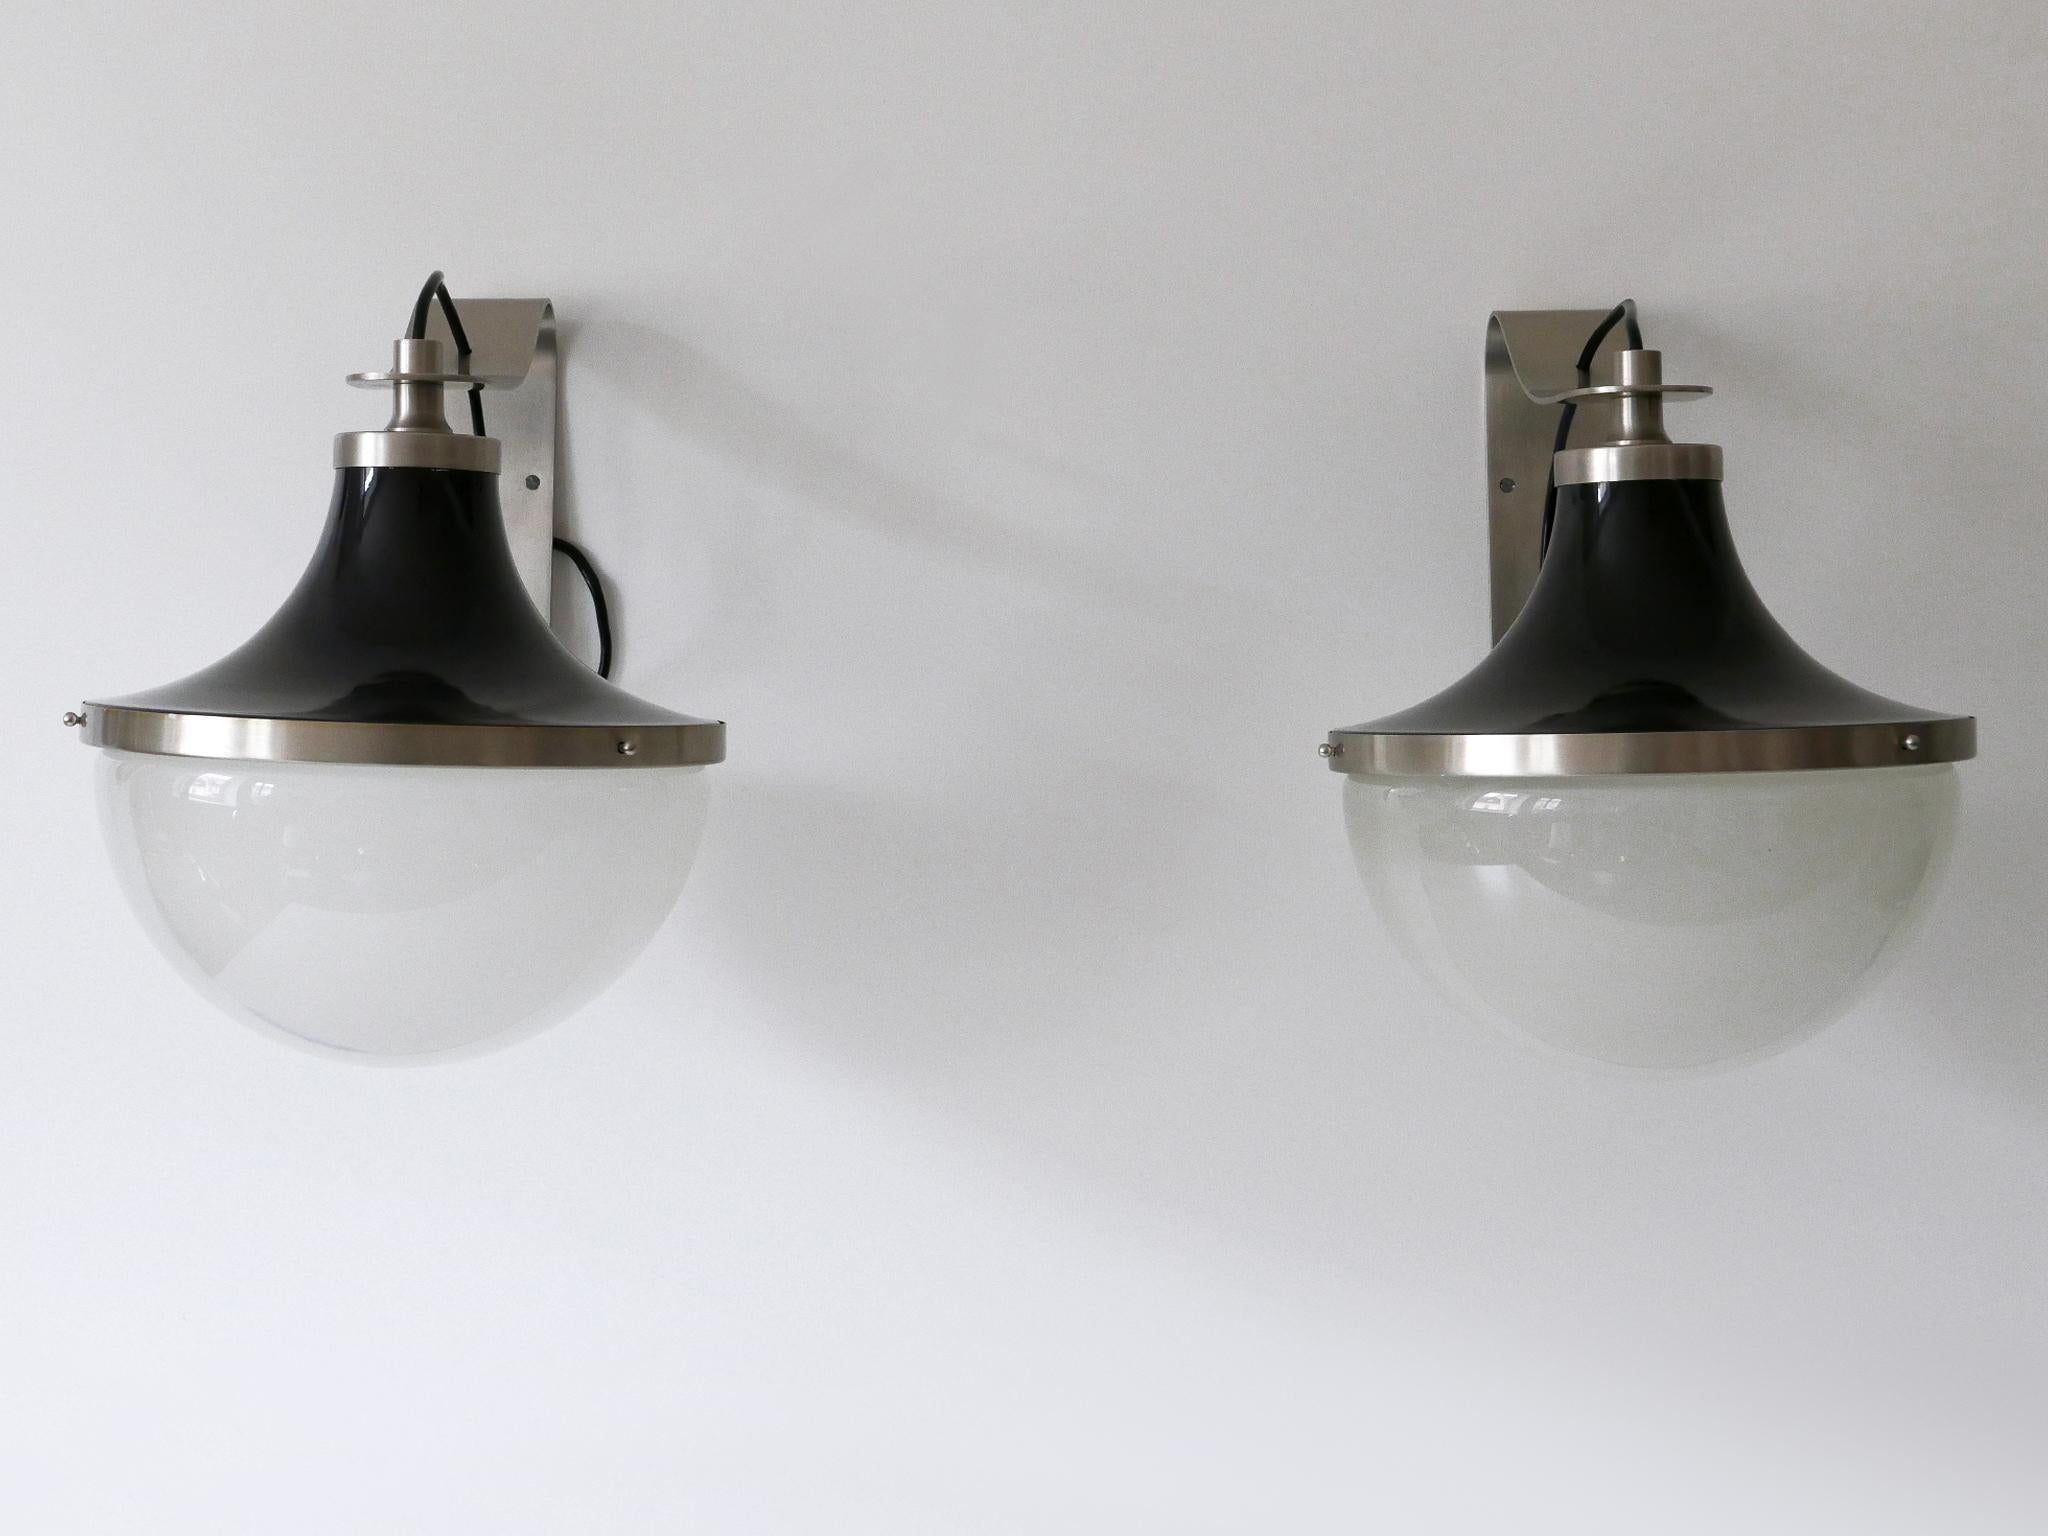 Satz von zwei vernickelten Messing-Leuchten 'Pi' aus der Jahrhundertmitte. Entworfen von Sergio Mazza für Artemide, Italien, 1960er Jahre.

Gefertigt aus vernickeltem Messing und Glas; jede Leuchte benötigt 1 x E27 / E26 Edison-Schraubbirne. Die